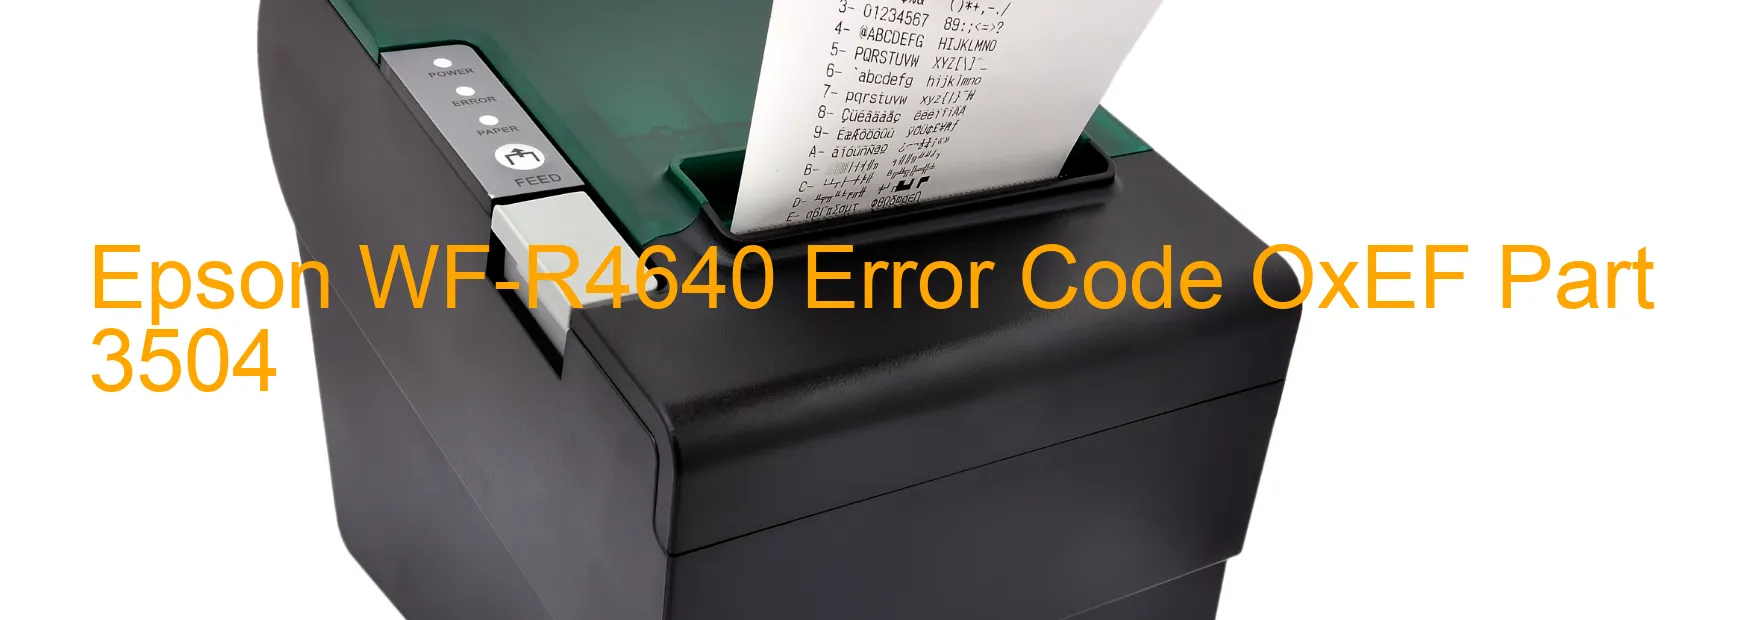 Epson WF-R4640 Error Code OxEF Part 3504